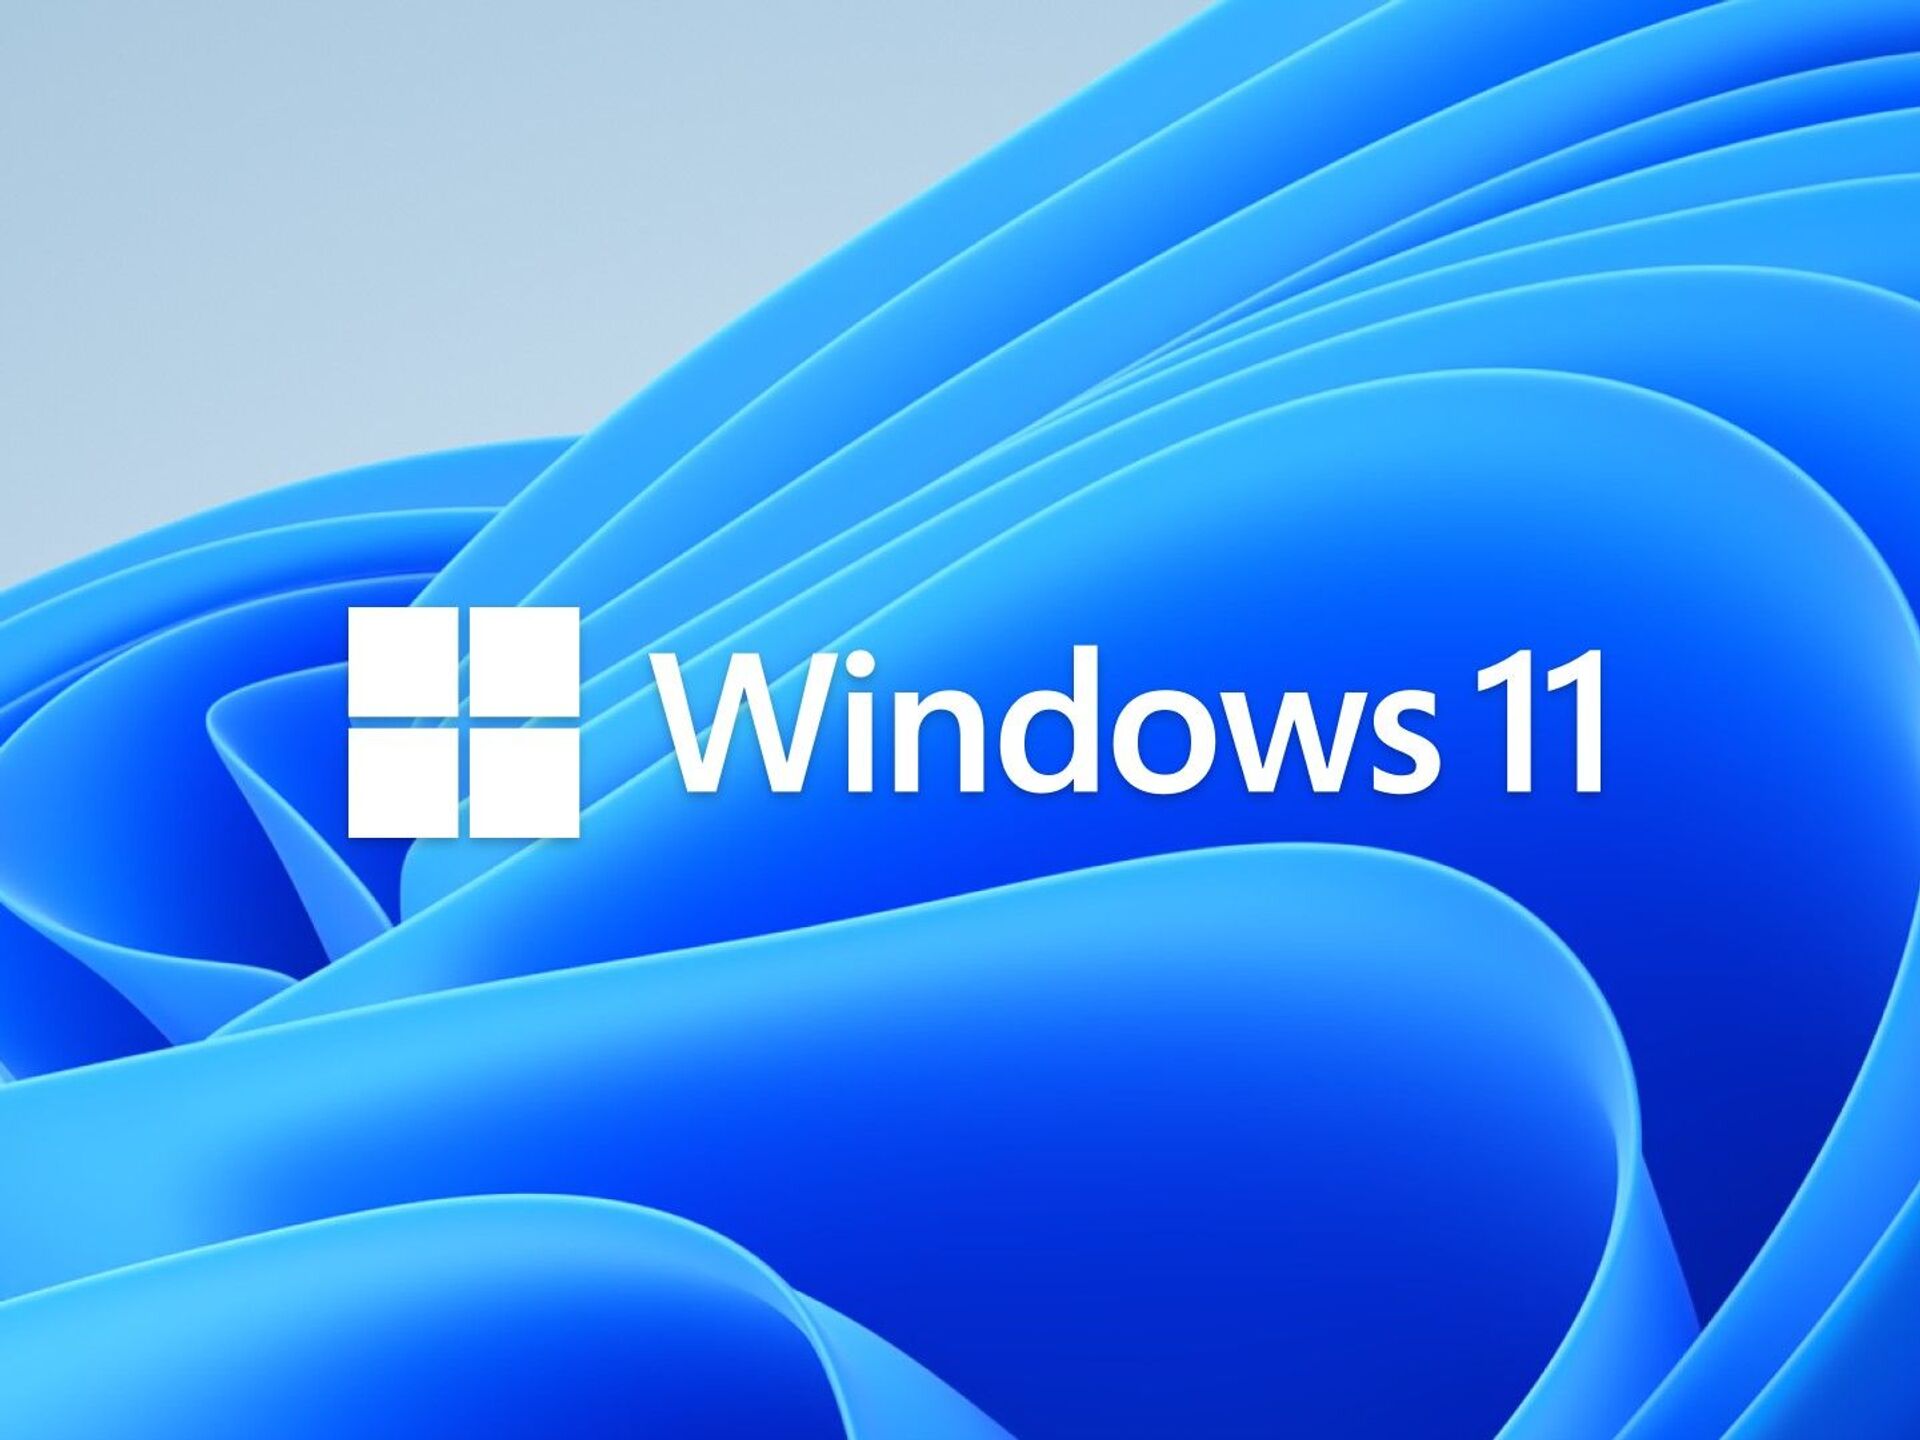 Windows 11 chính thức - Cuối cùng thì nó đã đến! Windows 11 chính thức đã được phát hành và mang đến cho người dùng nhiều tính năng mới thú vị. Hãy xem hình ảnh để khám phá một thế giới mới với Windows